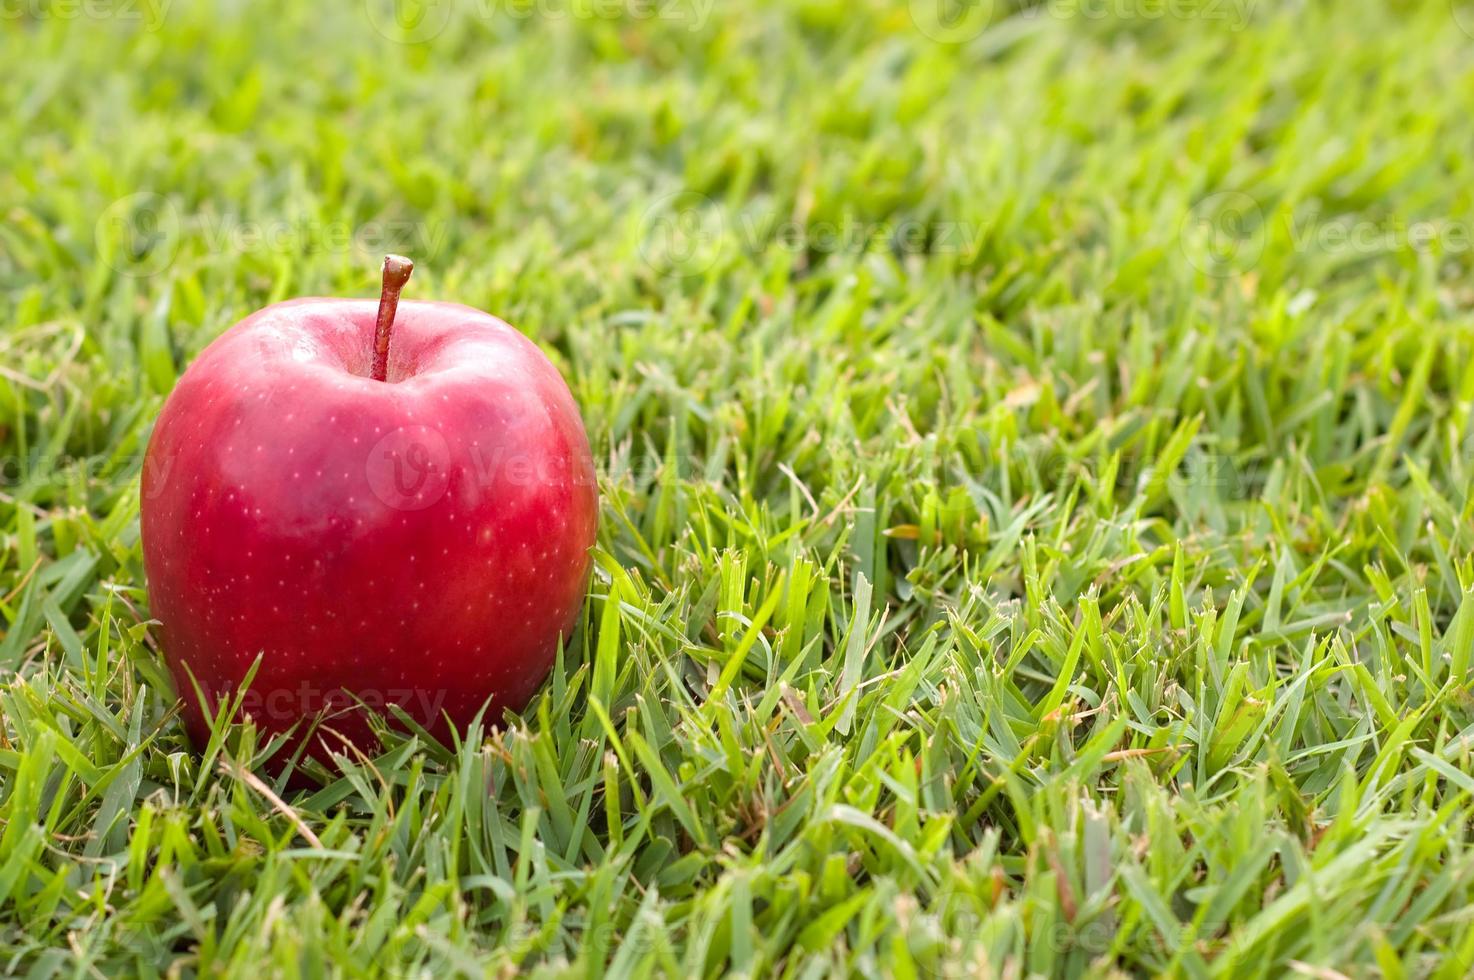 rode appel op gras foto